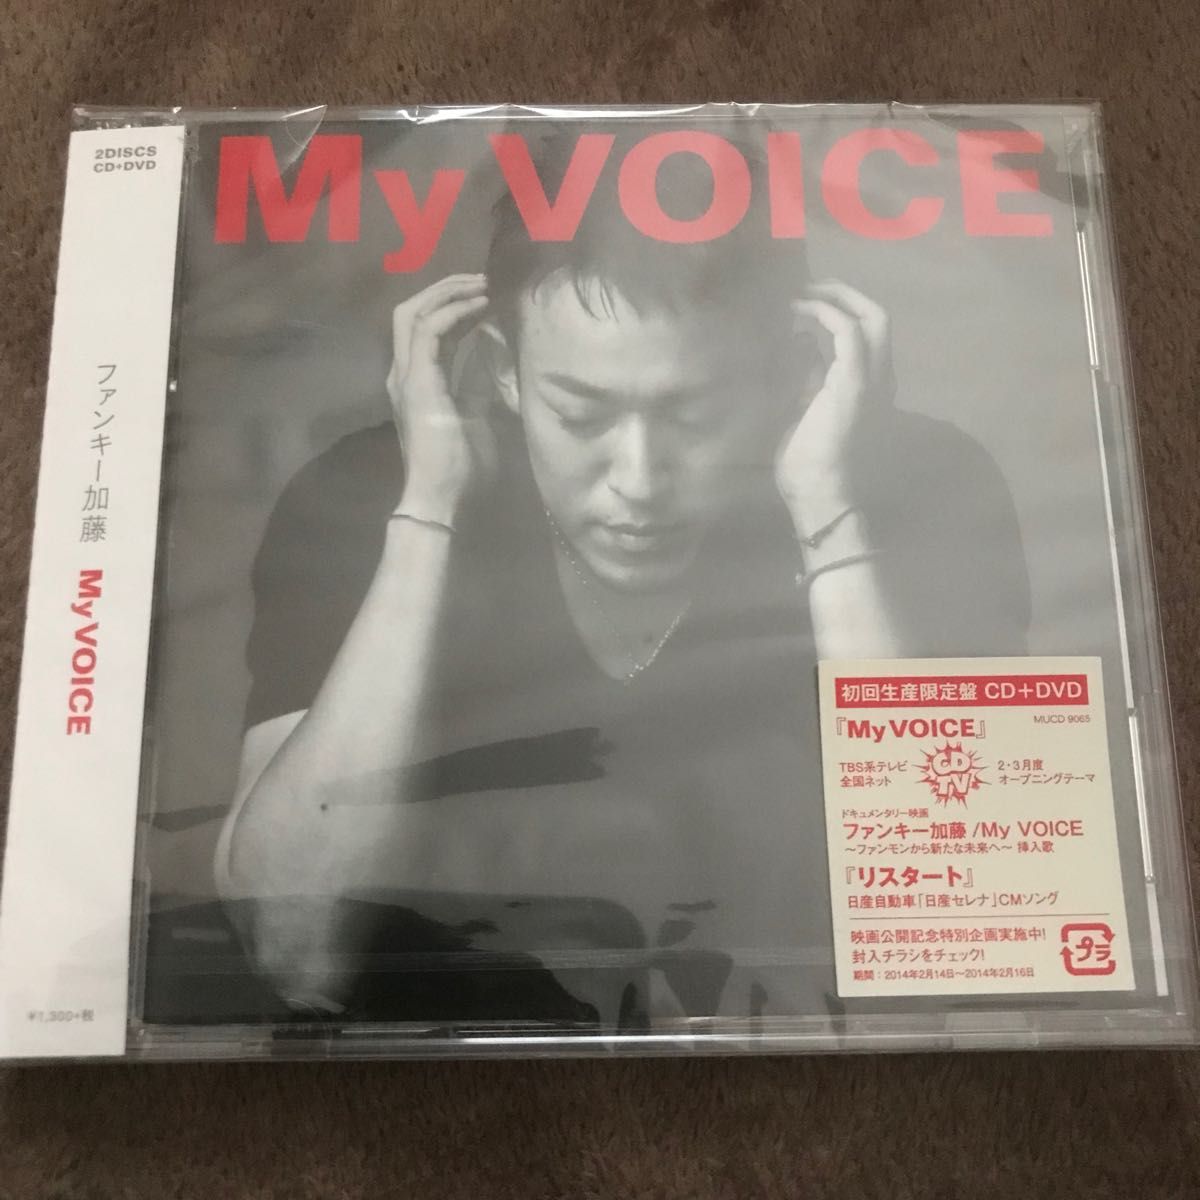 【新品未開封】ファンキー加藤/My VOICE 初回生産限定盤CD+DVD